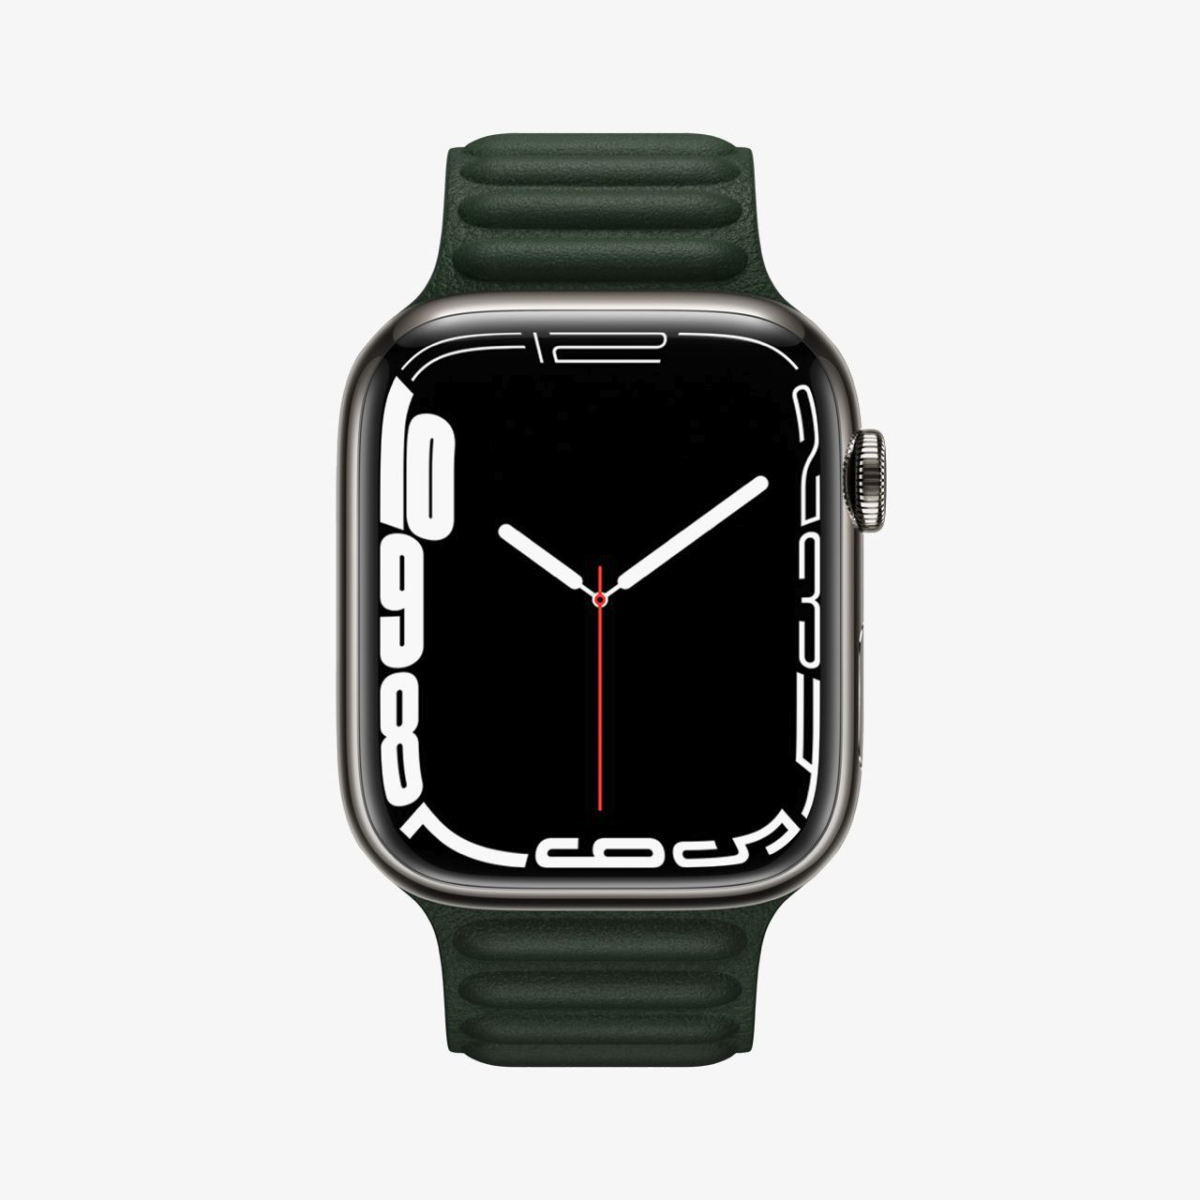 В Apple Watch Series 7 нашли секретный модуль передачи данных, работающий на частоте 60,5 ГГц